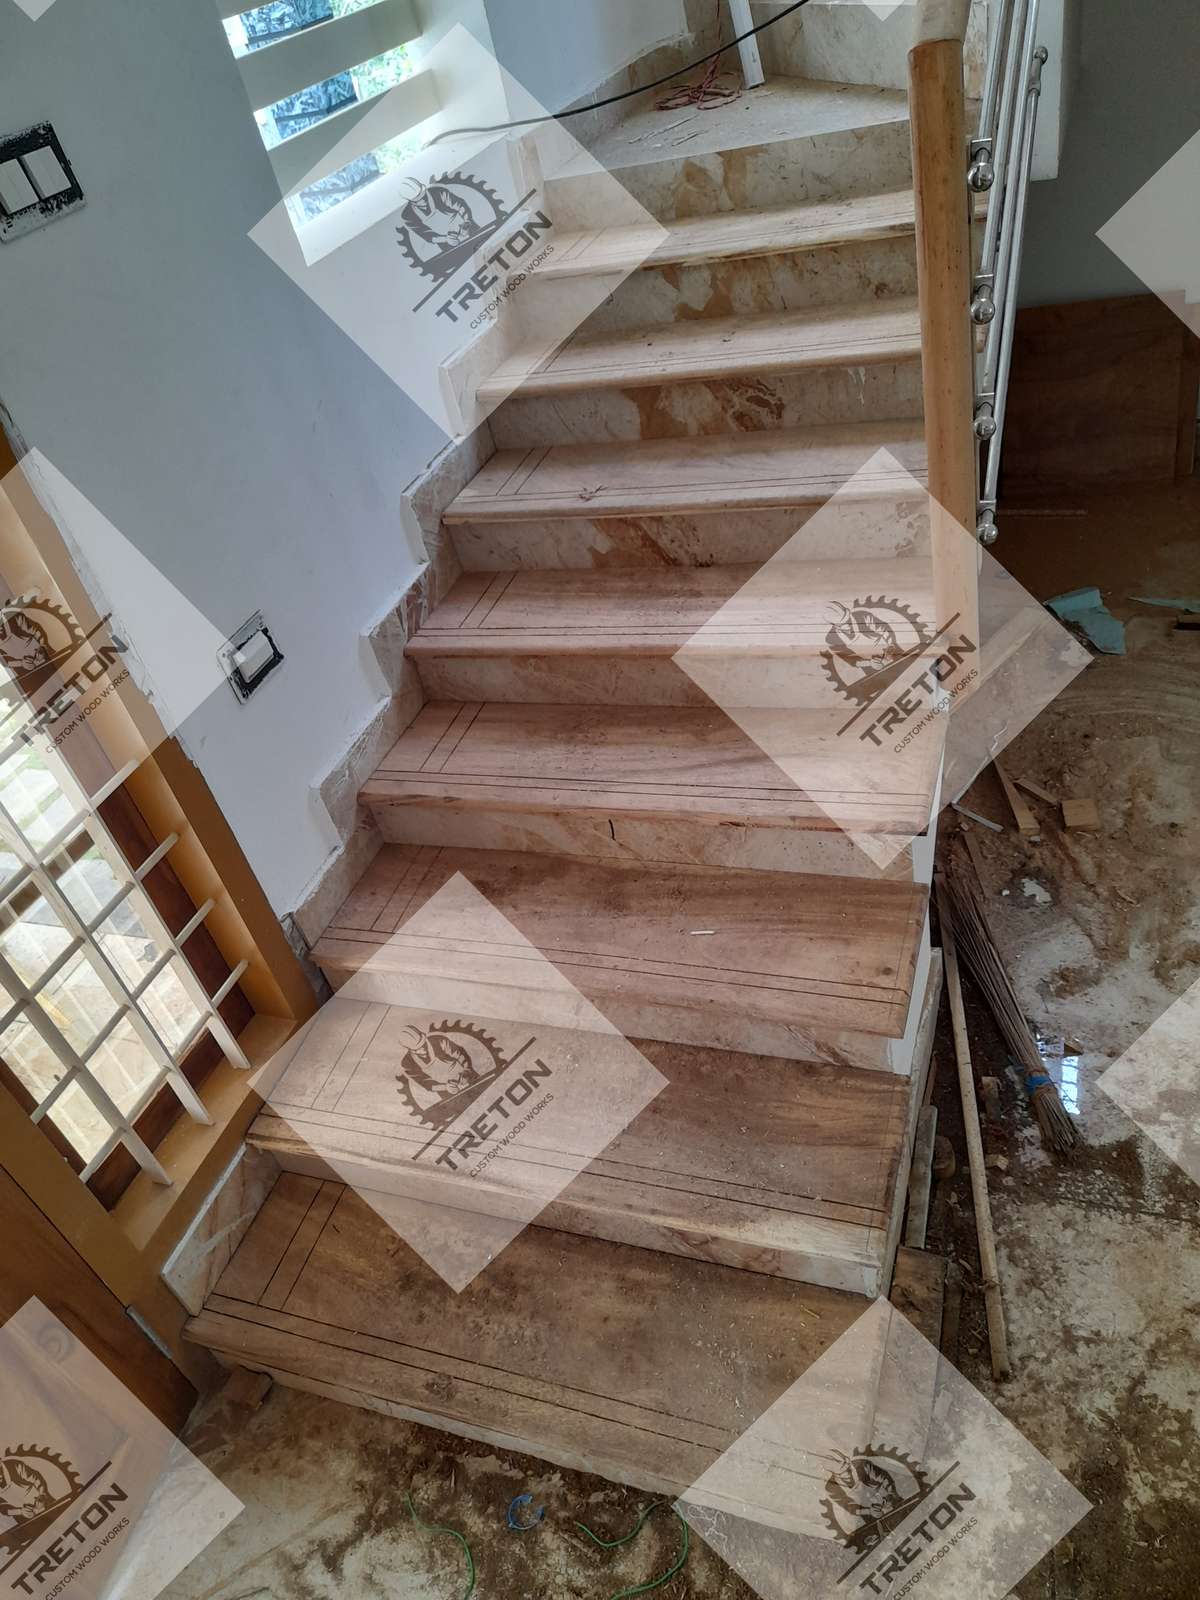 wooden steps ( ഹോൾസെയിൽ വിലയിൽ ഗുണമേന്മയുള്ള സാധനങ്ങൾ ലഭ്യമാണ് ) 8590048249

 #WoodenWindows  #step  #WoodenFlooring  #WoodenKitchen  #Woodendoor  #TeakWoodDoors   #teakwoodfurniture